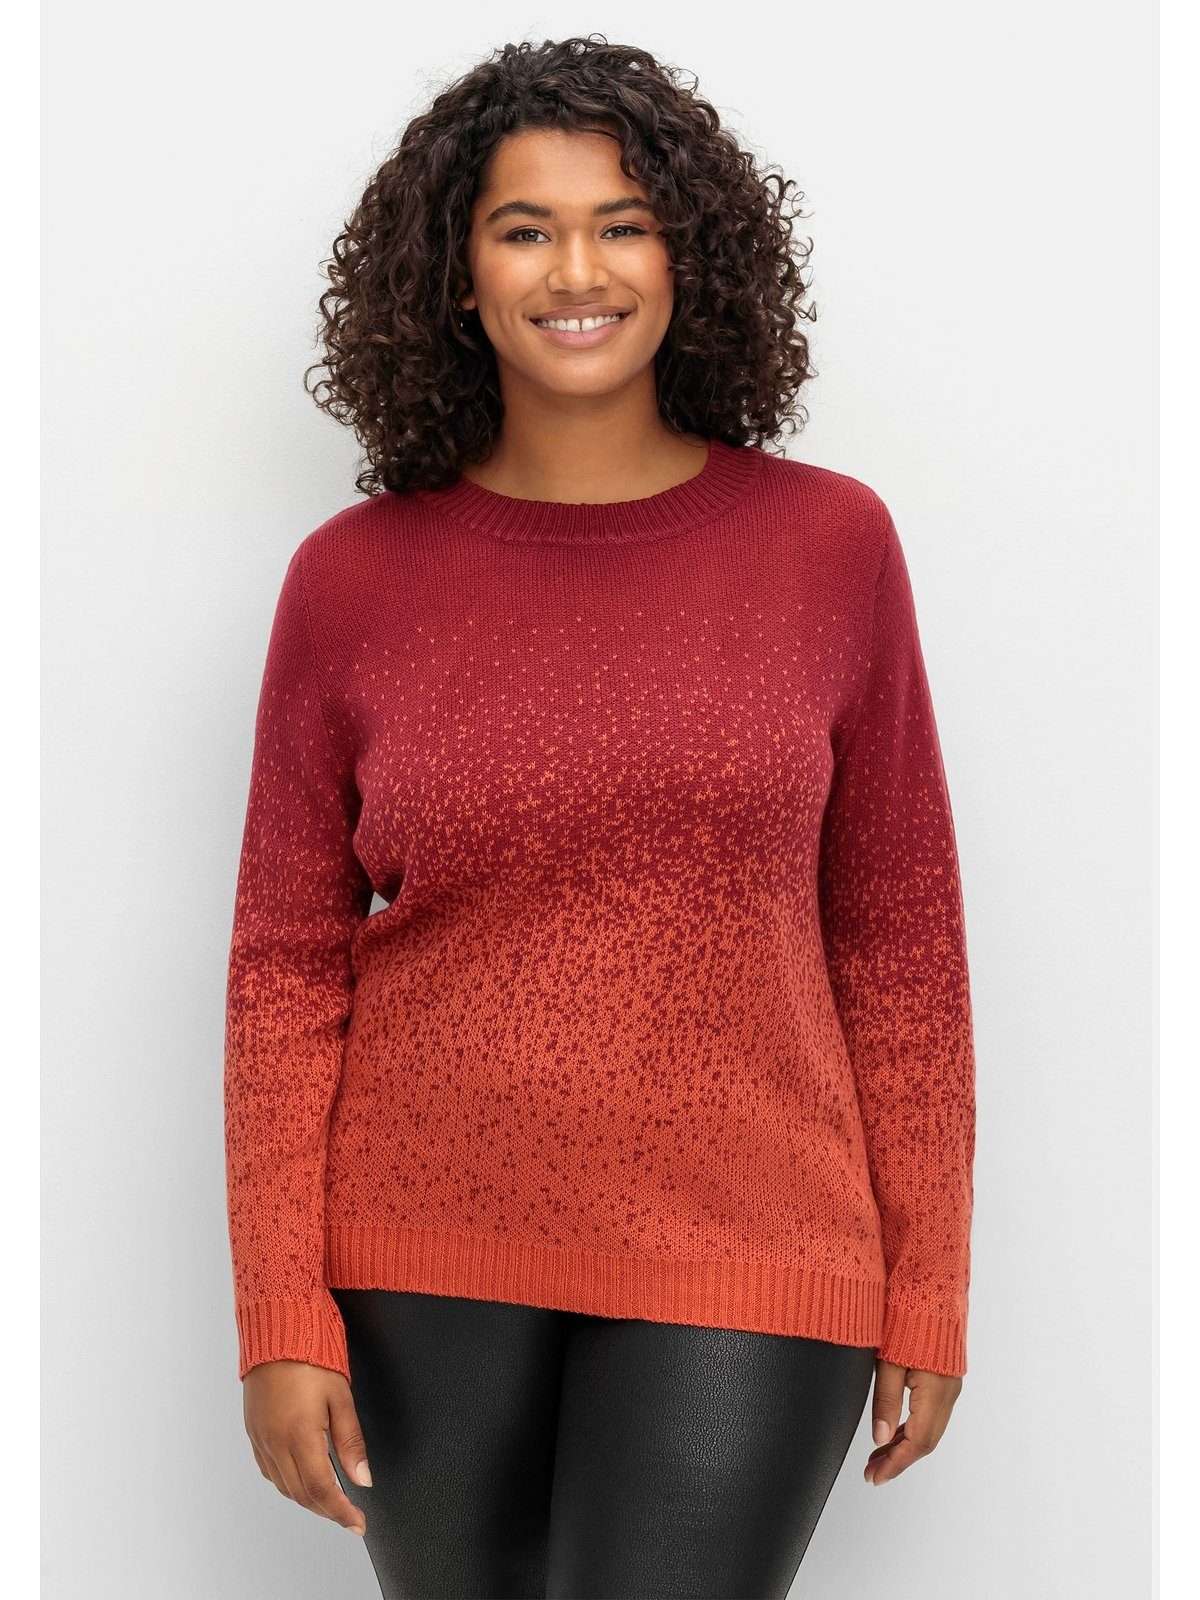 Вязаный свитер больших размеров жаккардовой вязкой.